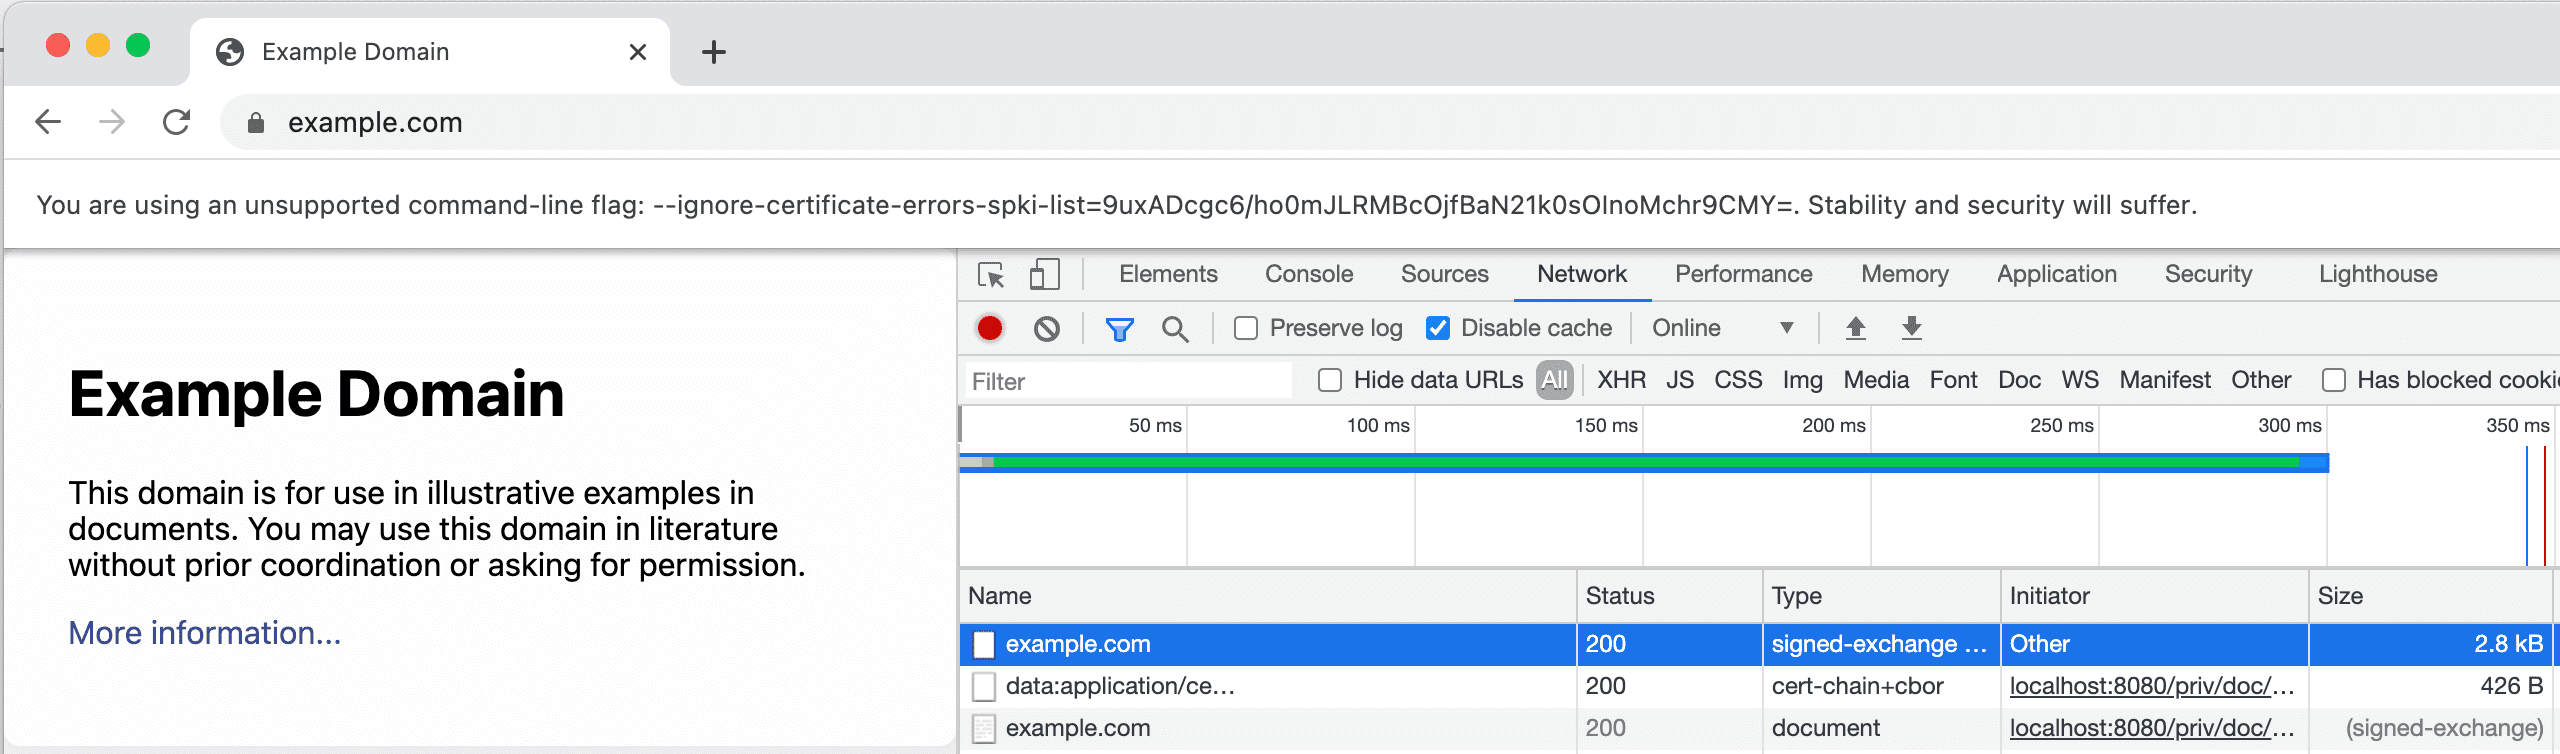 DevTools Network sekmesinde SXG ve sertifikasını gösteren ekran görüntüsü.